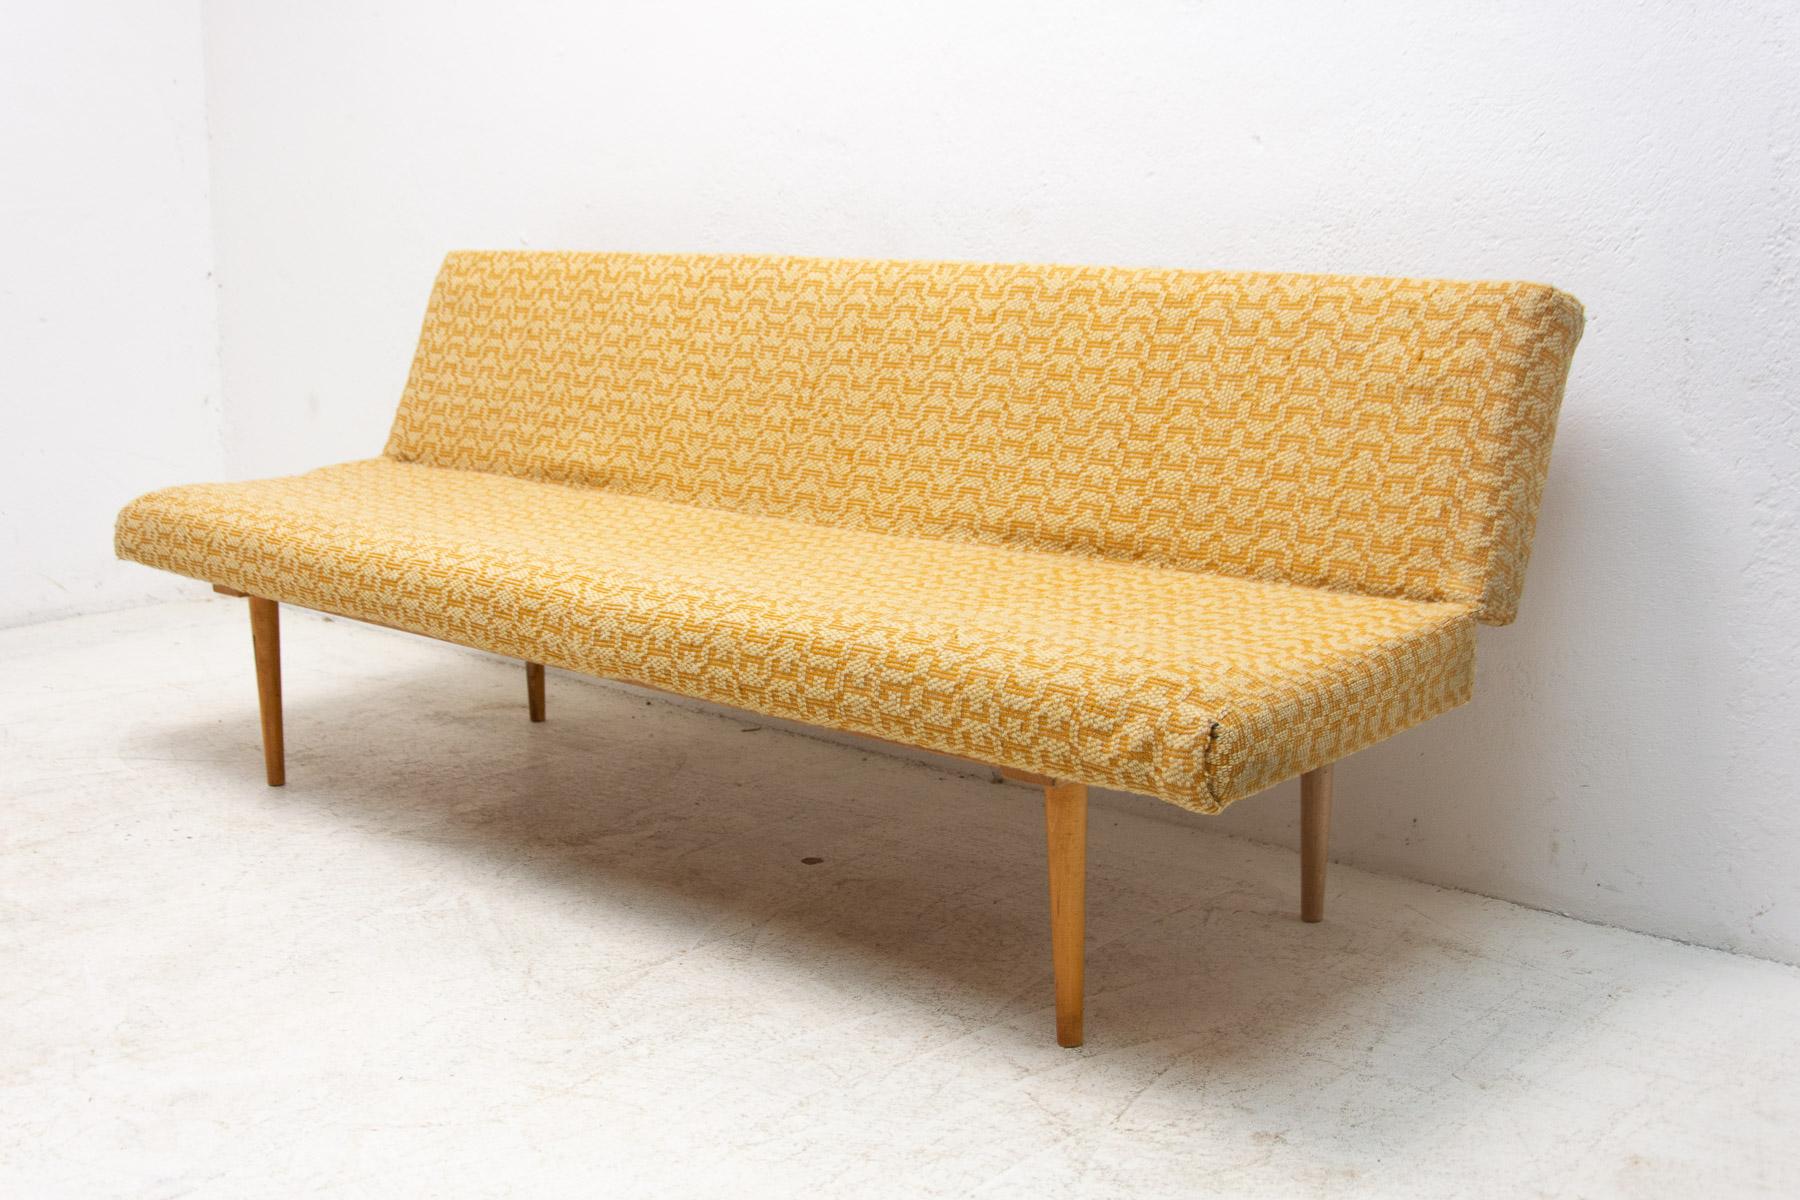 Sofa/Tagesbett aus der Mitte des Jahrhunderts, hergestellt in der ehemaligen Tschechoslowakei in den 1960er Jahren, entworfen von Miroslav Navrátil. MATERIAL: Buchenholz, Stoff. Das Sofa ist in einem gut erhaltenen Vintage-Zustand, weist aber